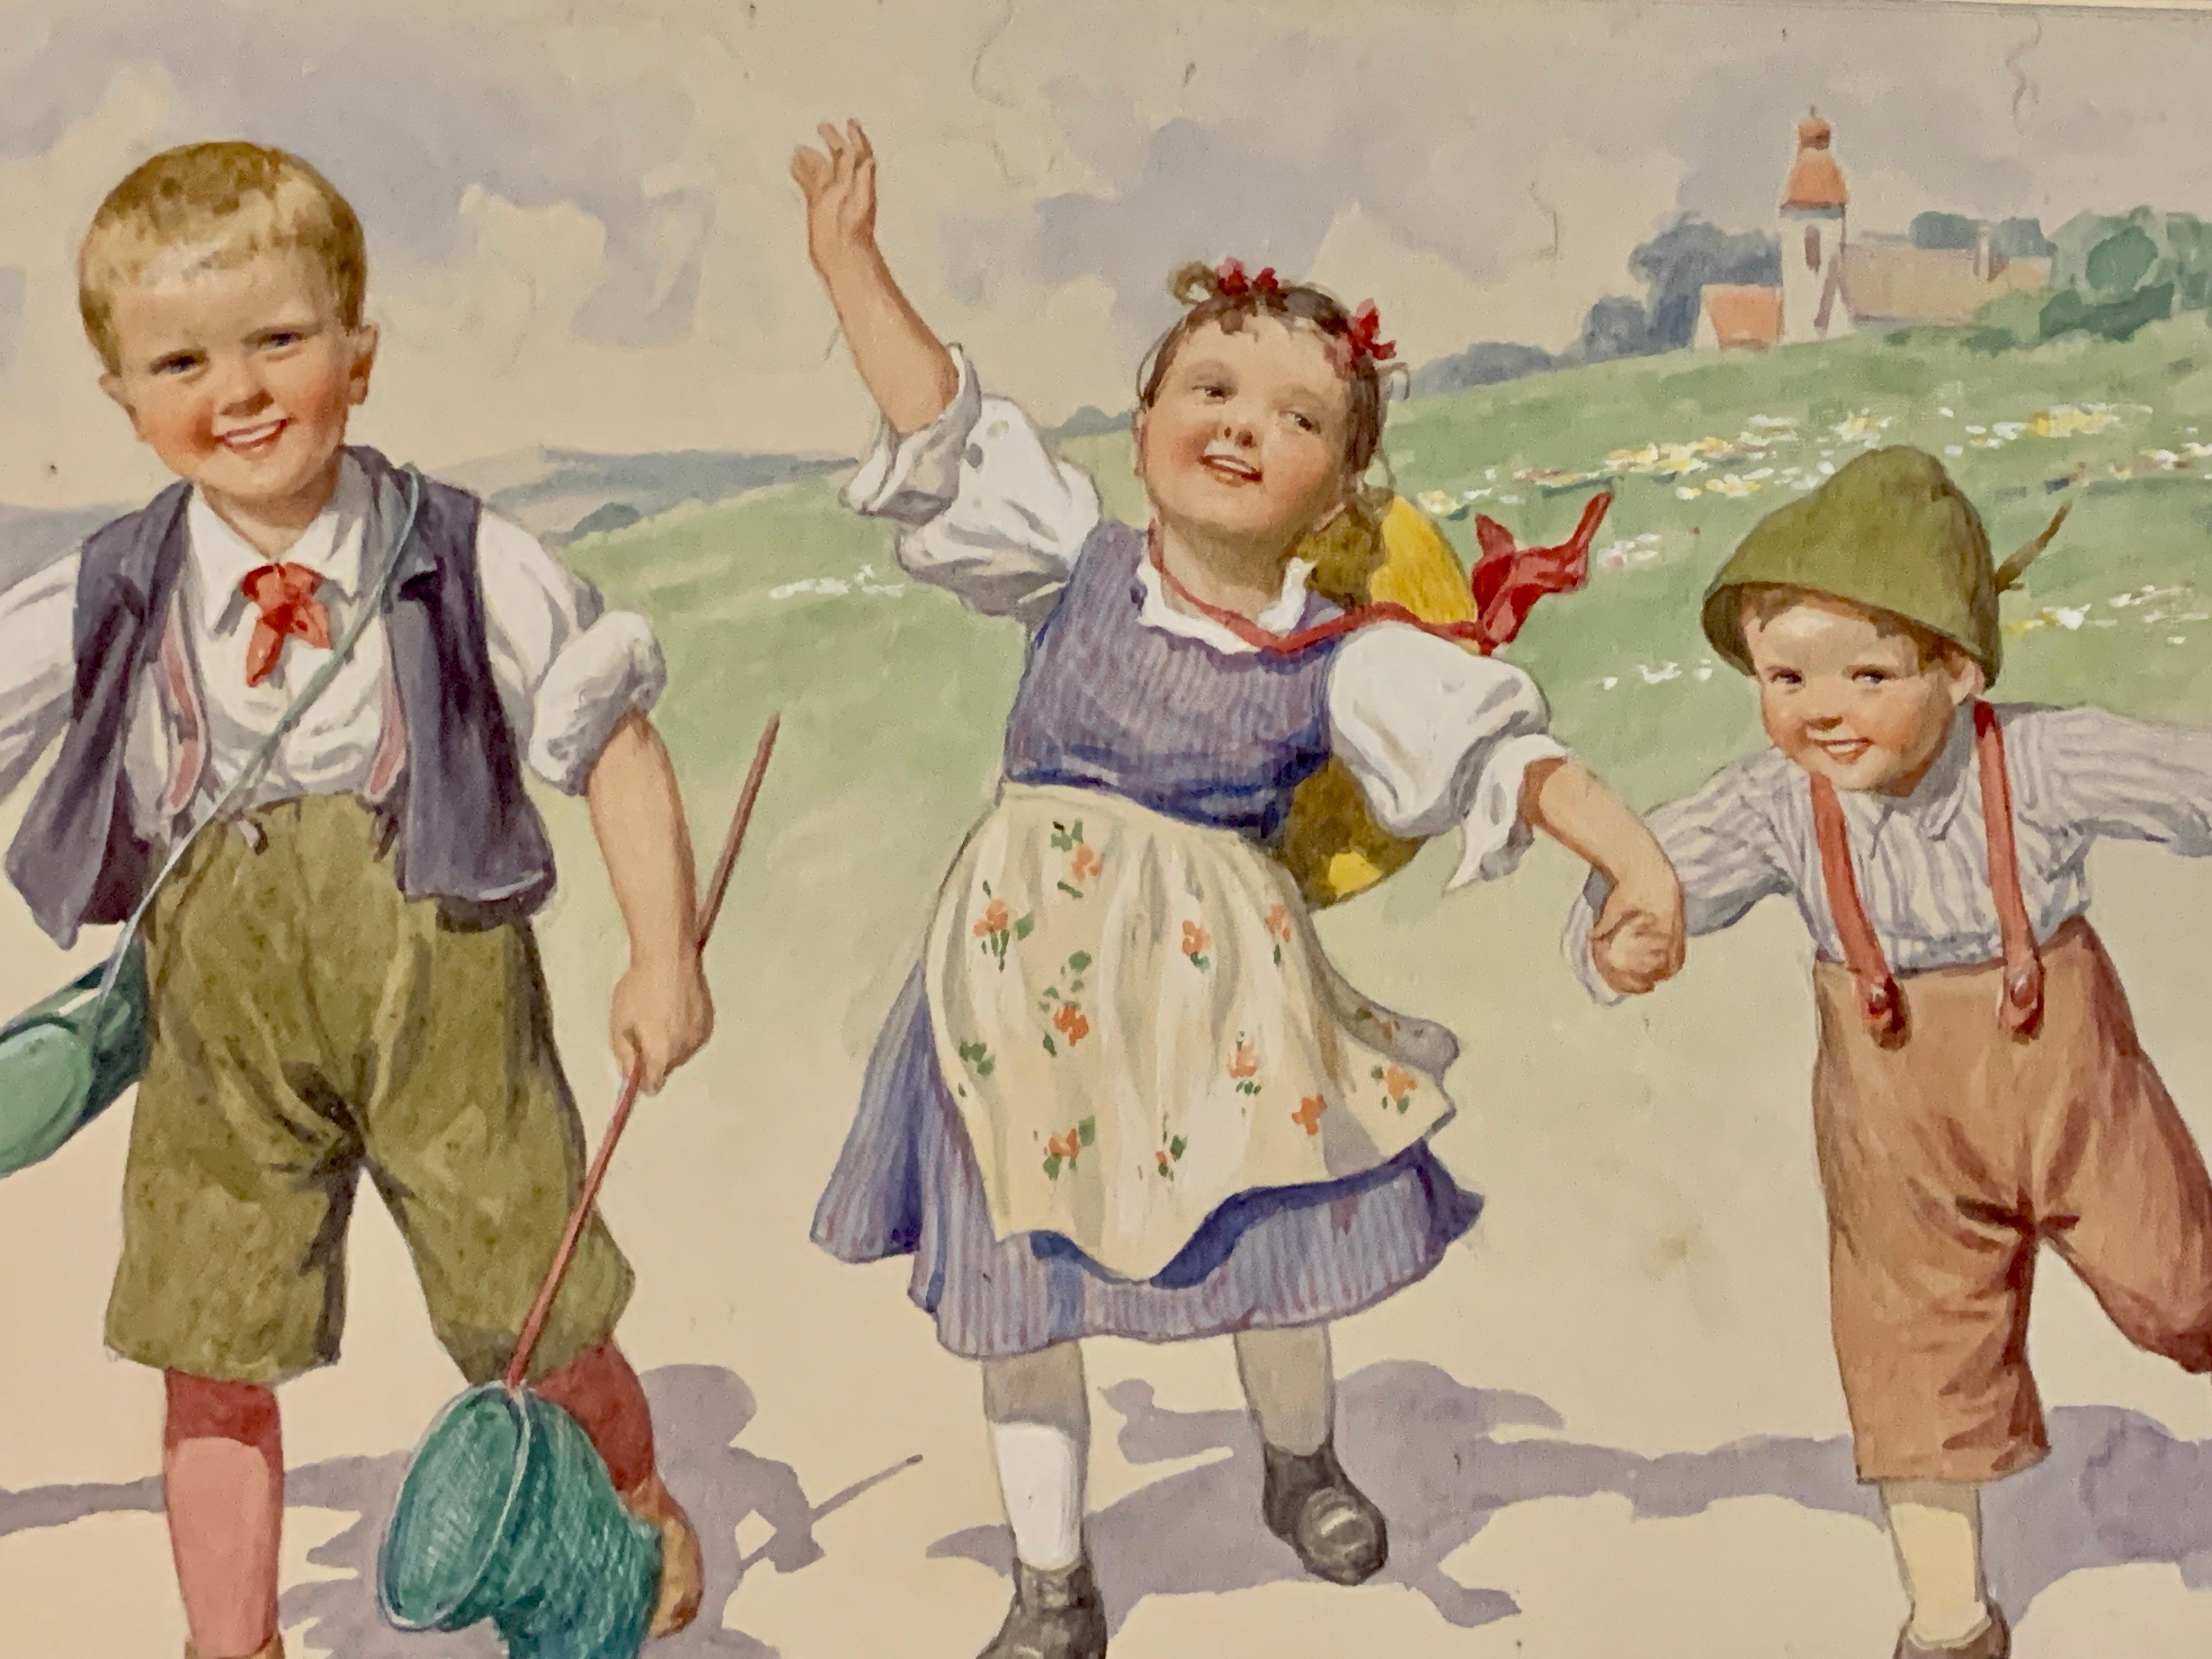 Österreichisch-deutsche Kinder des frühen 20. Jahrhunderts, die gemeinsam in einer Landschaft spielen  (Beige), Figurative Art, von Karl Feiertag